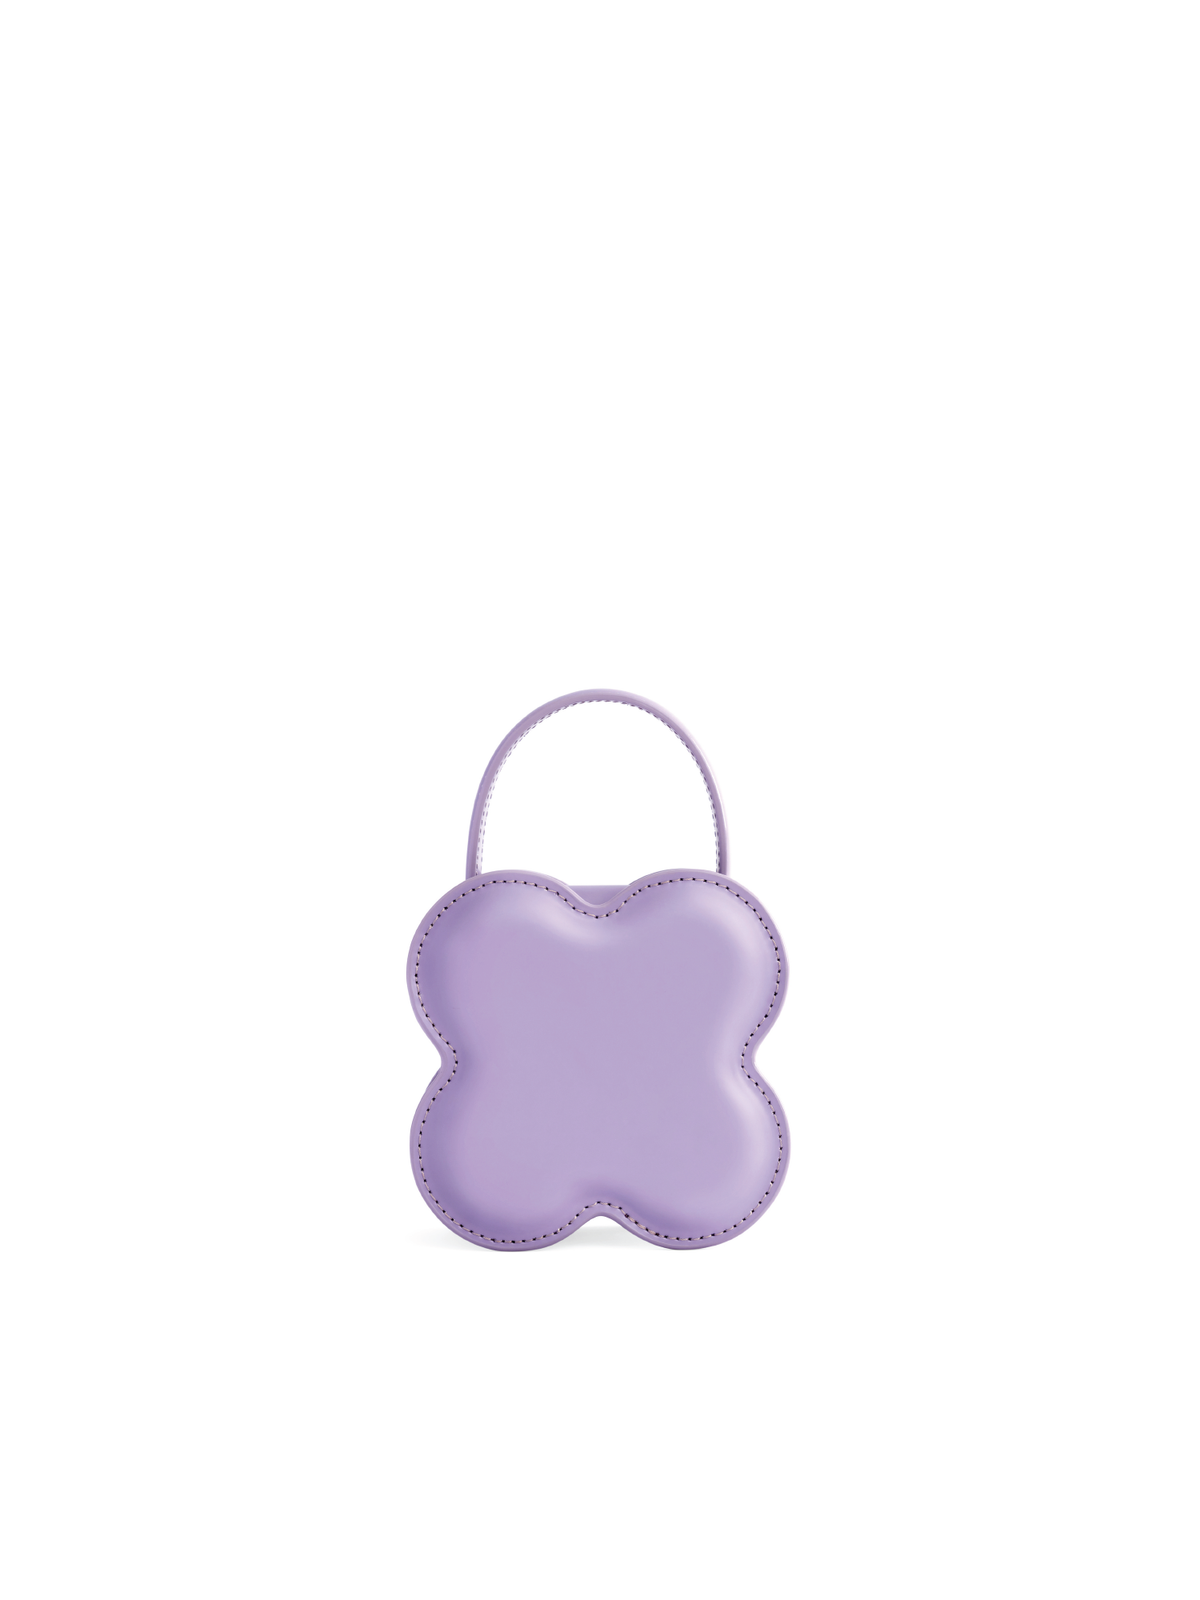 Lucky Clover Handbag - Lilac (Small)